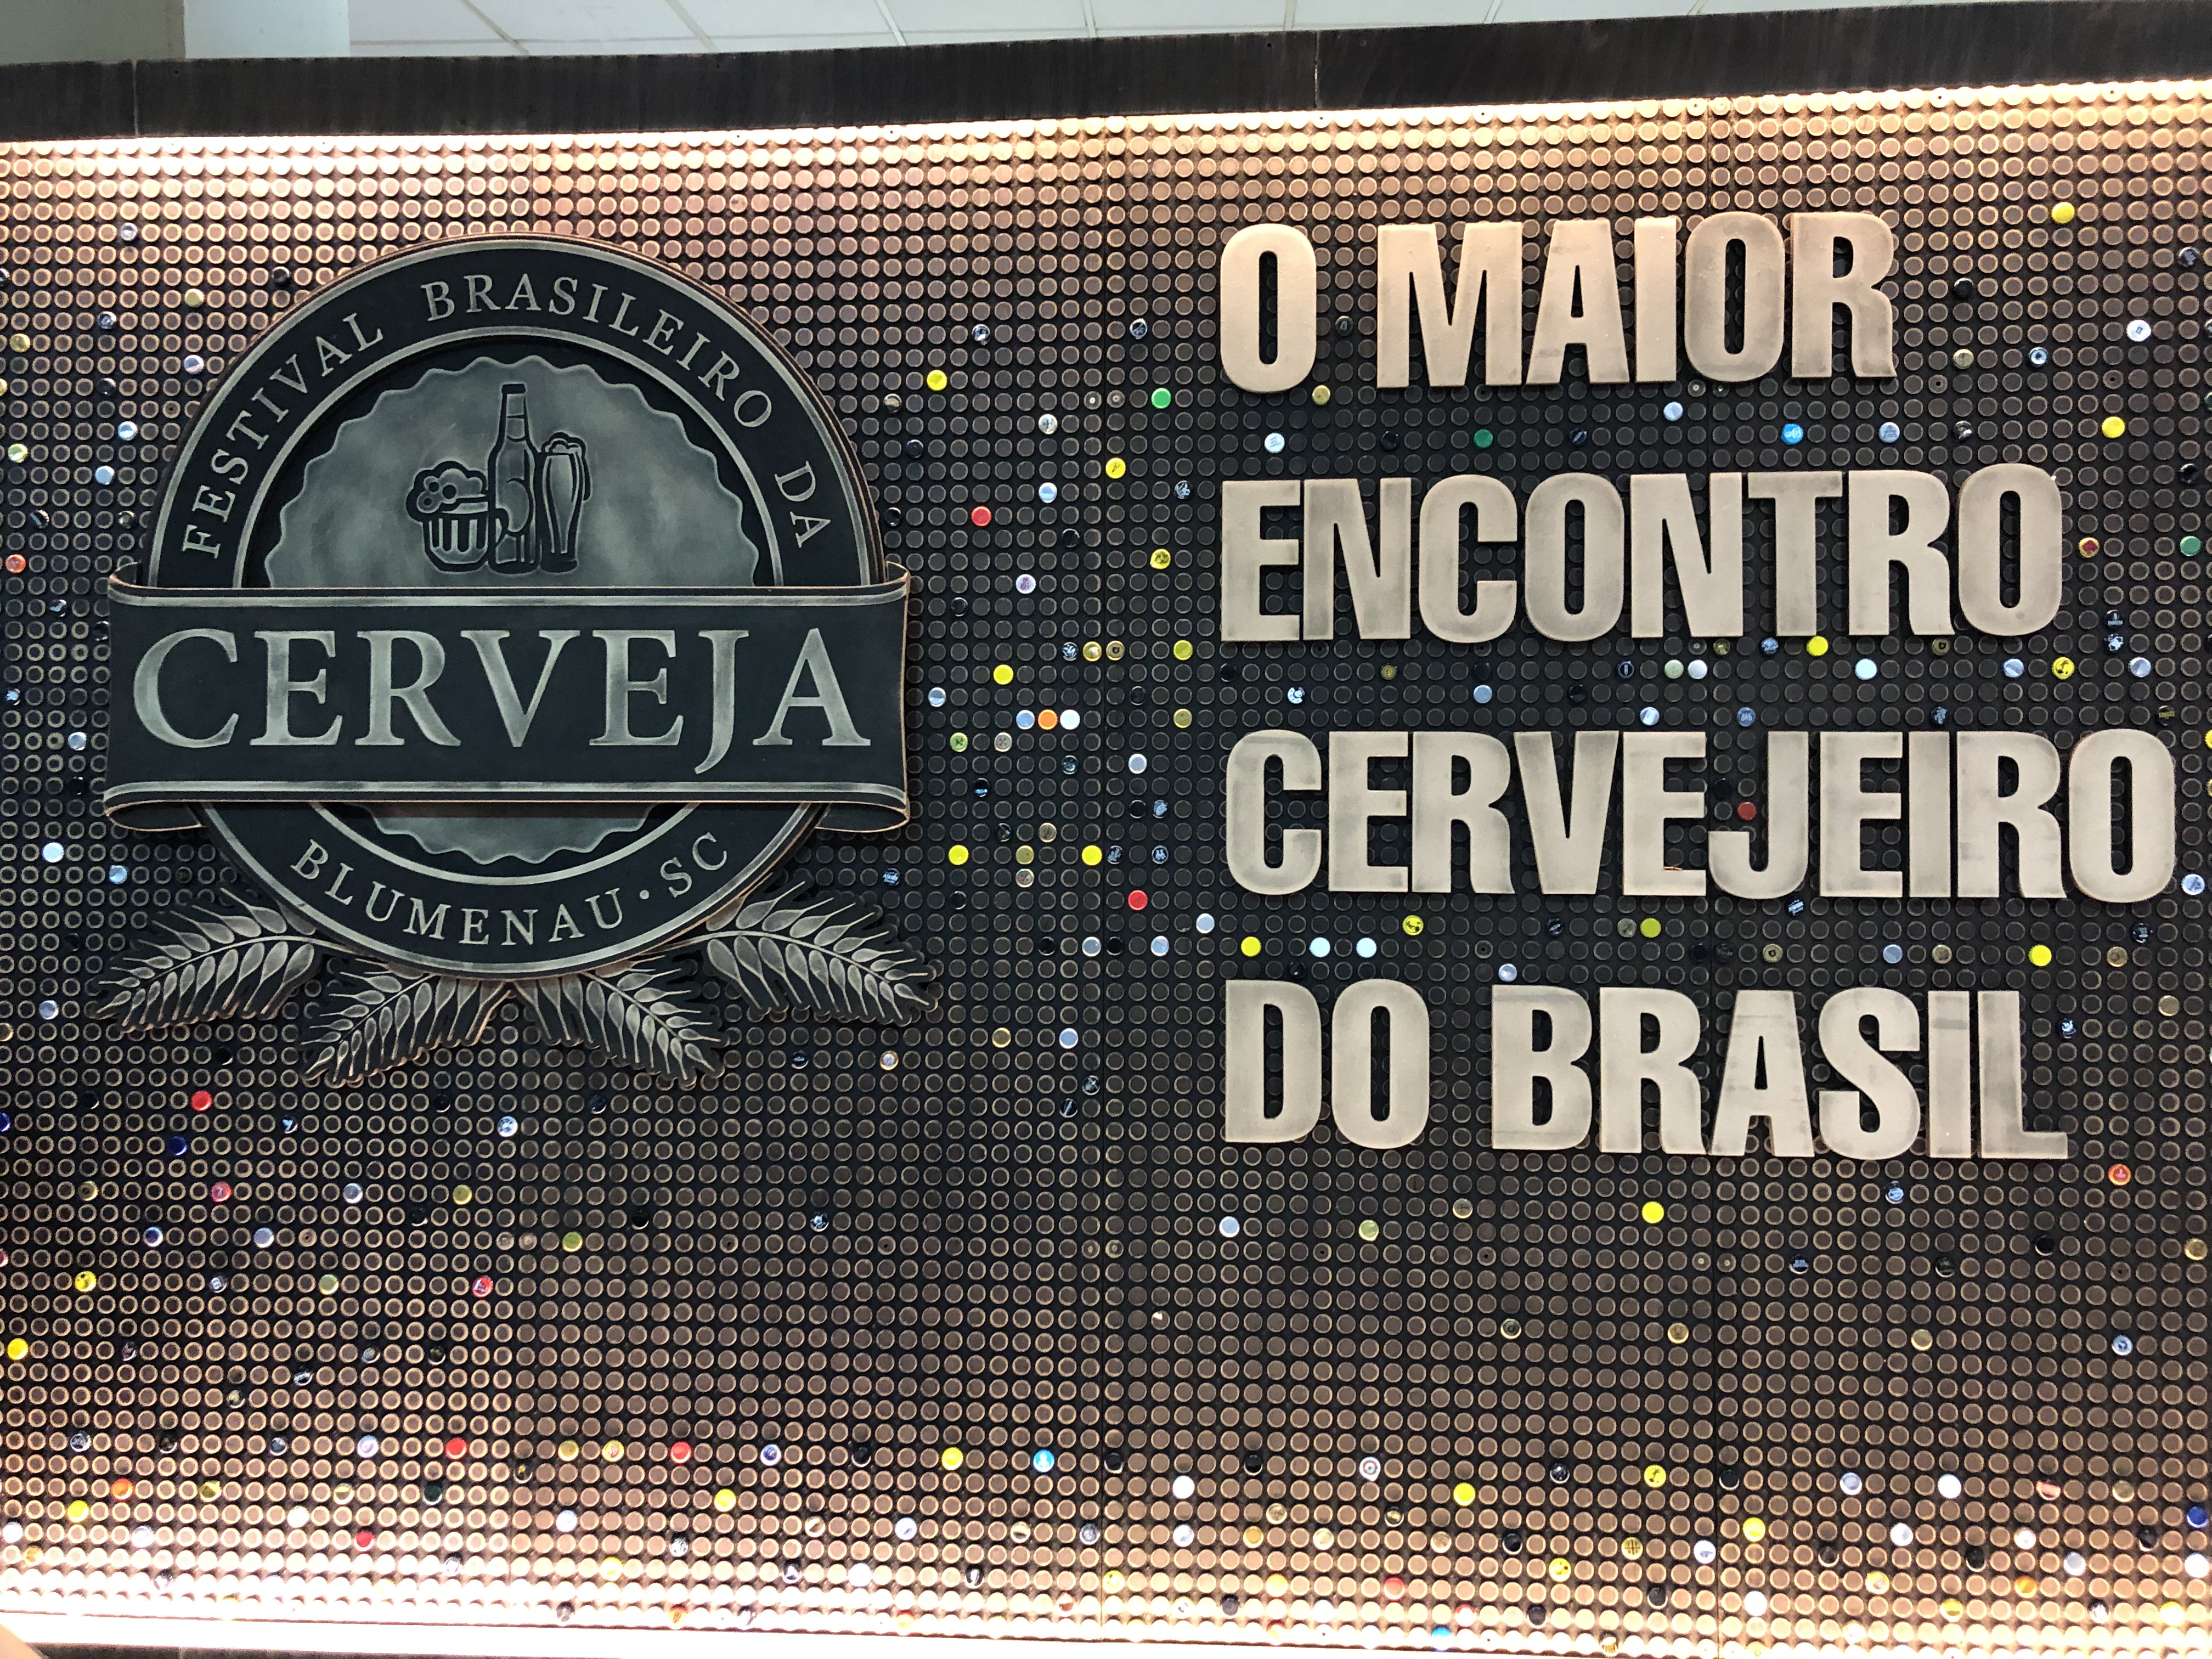 Festival Brasileiro da Cerveja reuniu mais de 35 mil pessoas em Blumenau - Foto: Gleison Barreto Salin/Cerveja & Gastronomia